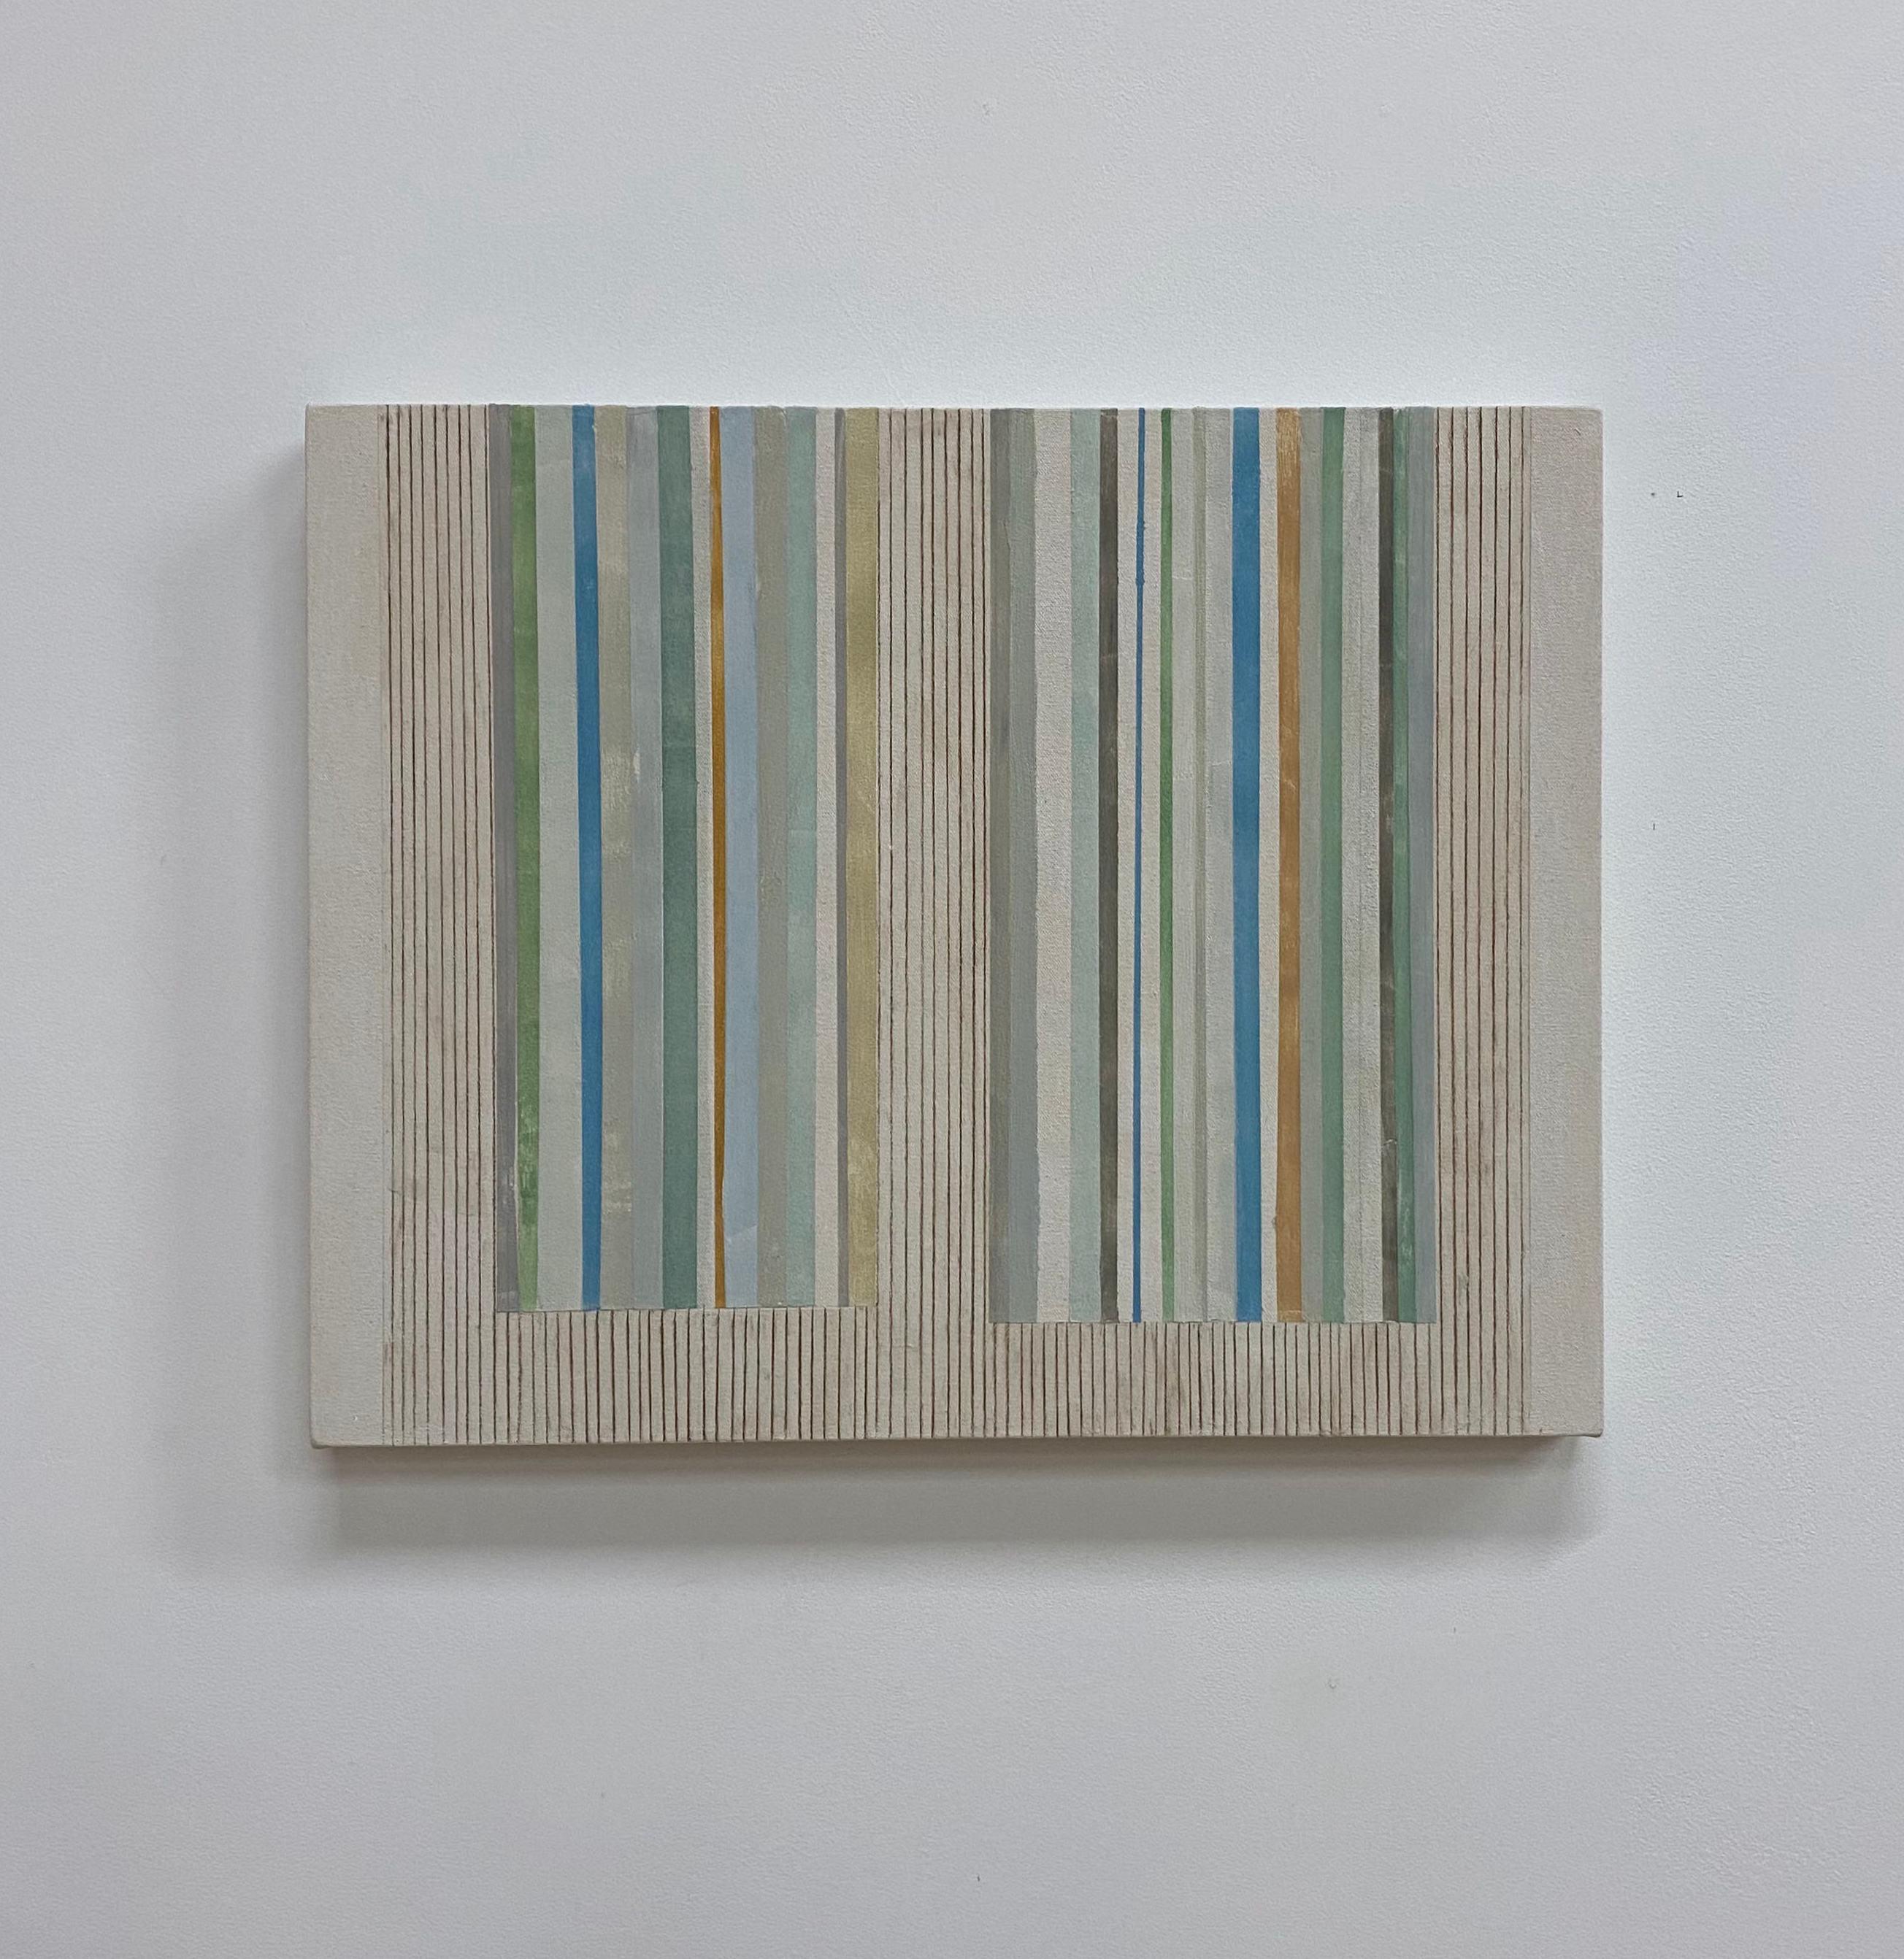 AB 20, Abstraktes Gemälde, Beige, Grau, Blau, Grün, Braun, Dunkelgelber Ocker – Painting von Elizabeth Gourlay